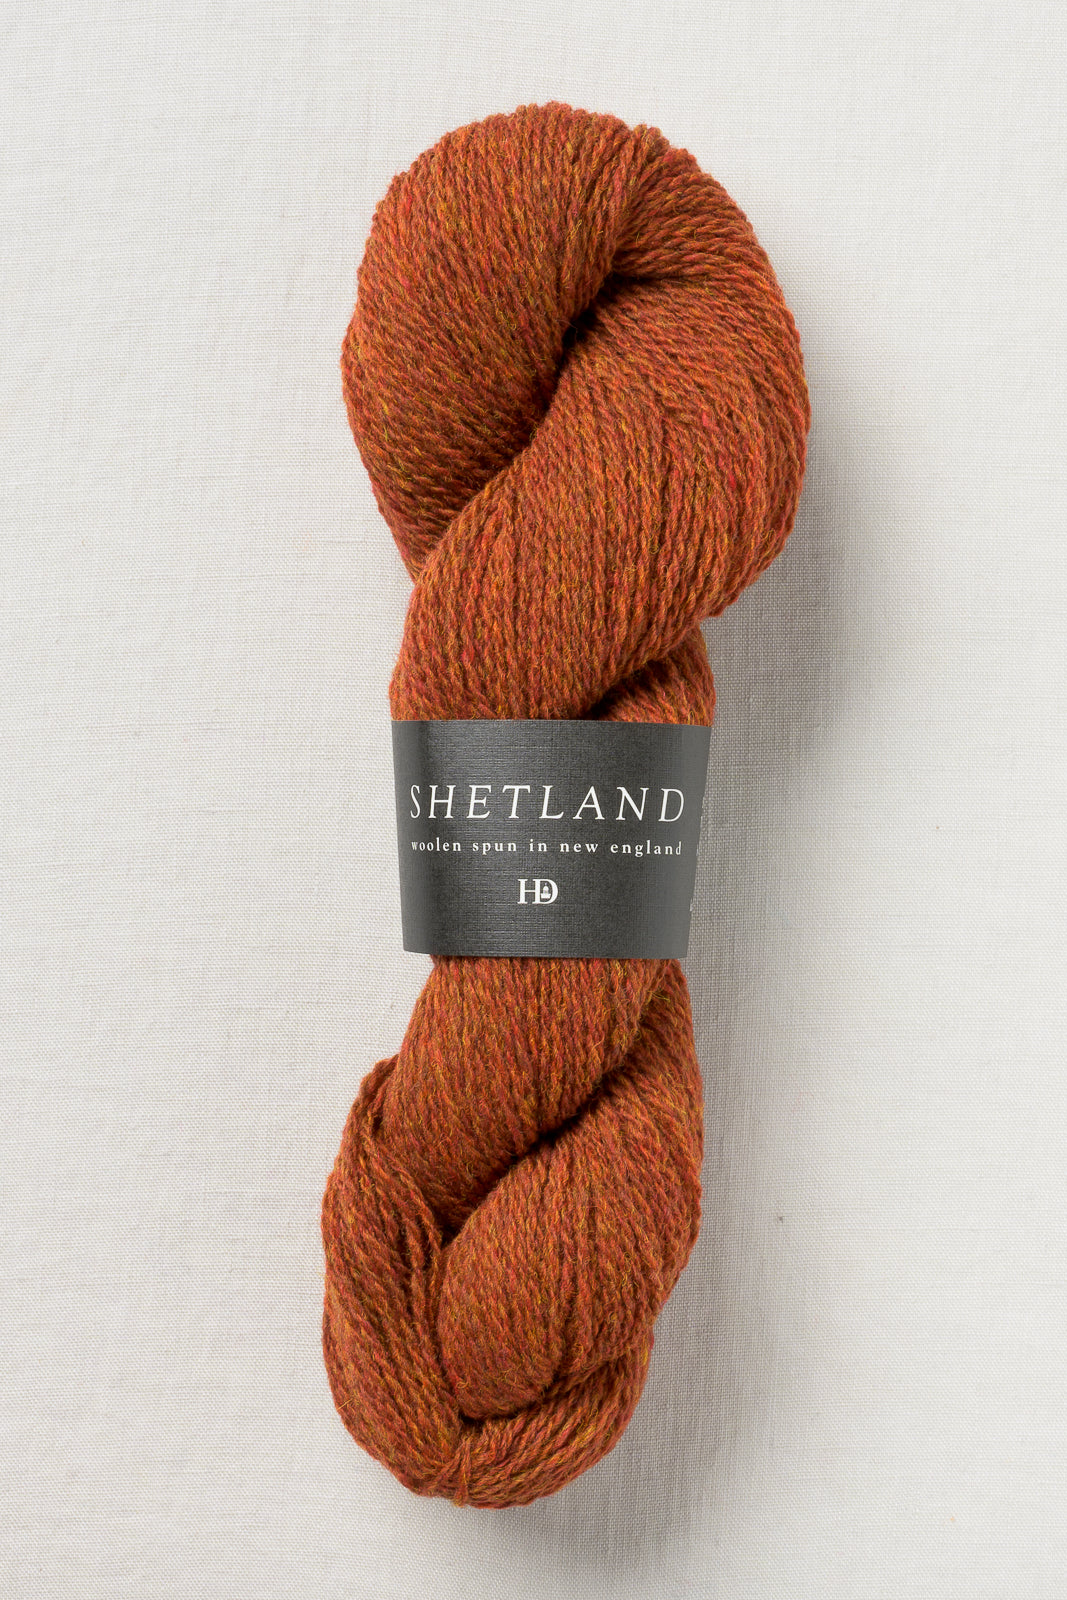 Harrisville Designs - Shetland Yarn – Harrisville Designs, Inc.